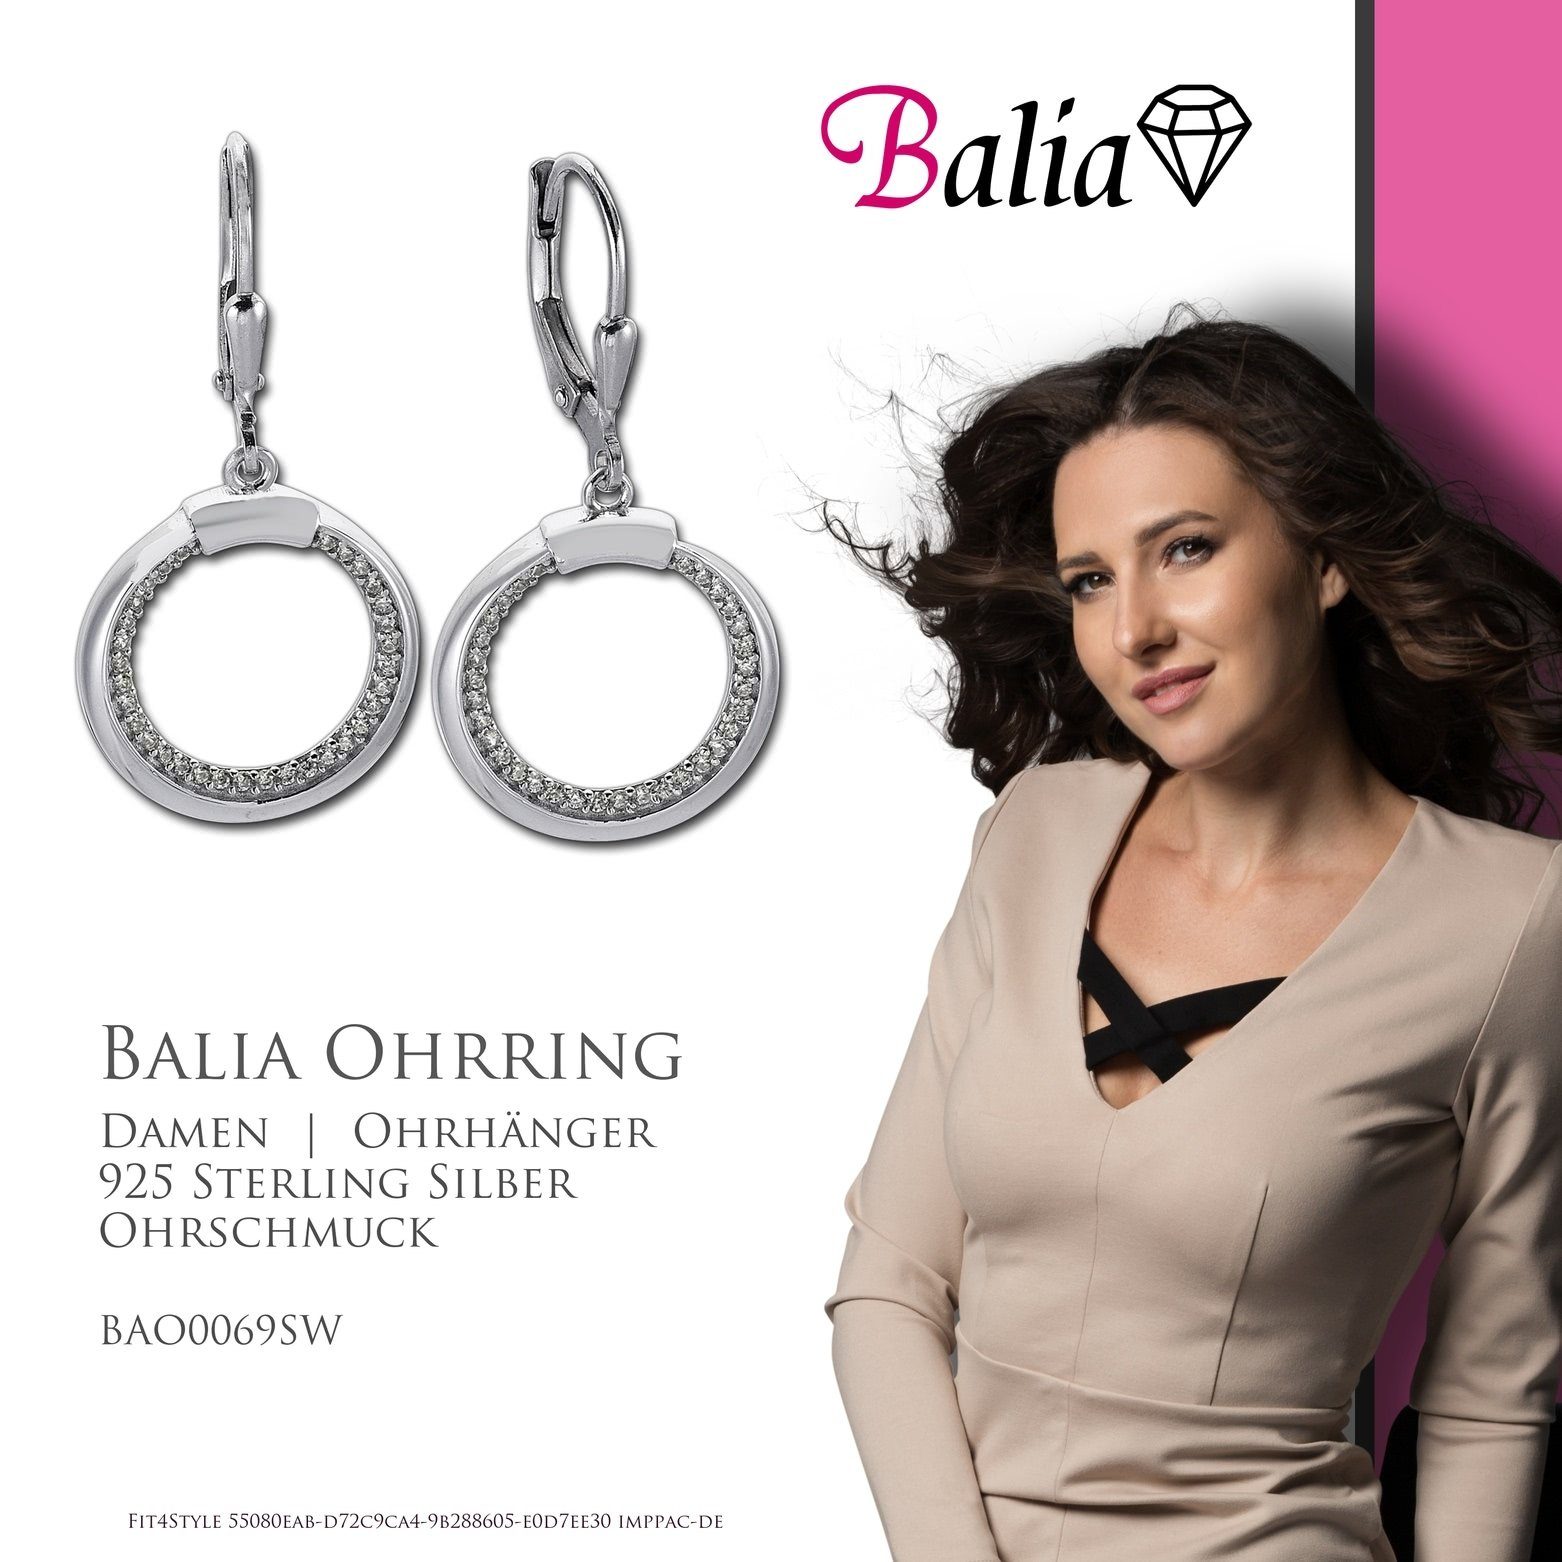 (Ohrhänger), Zirkonia Ohrhänger glanz Damen Sterling silber Ohrhänger aus 925 Elegance Silber, für Balia Damen Ohrhänger Balia Paar weiß, Farbe: